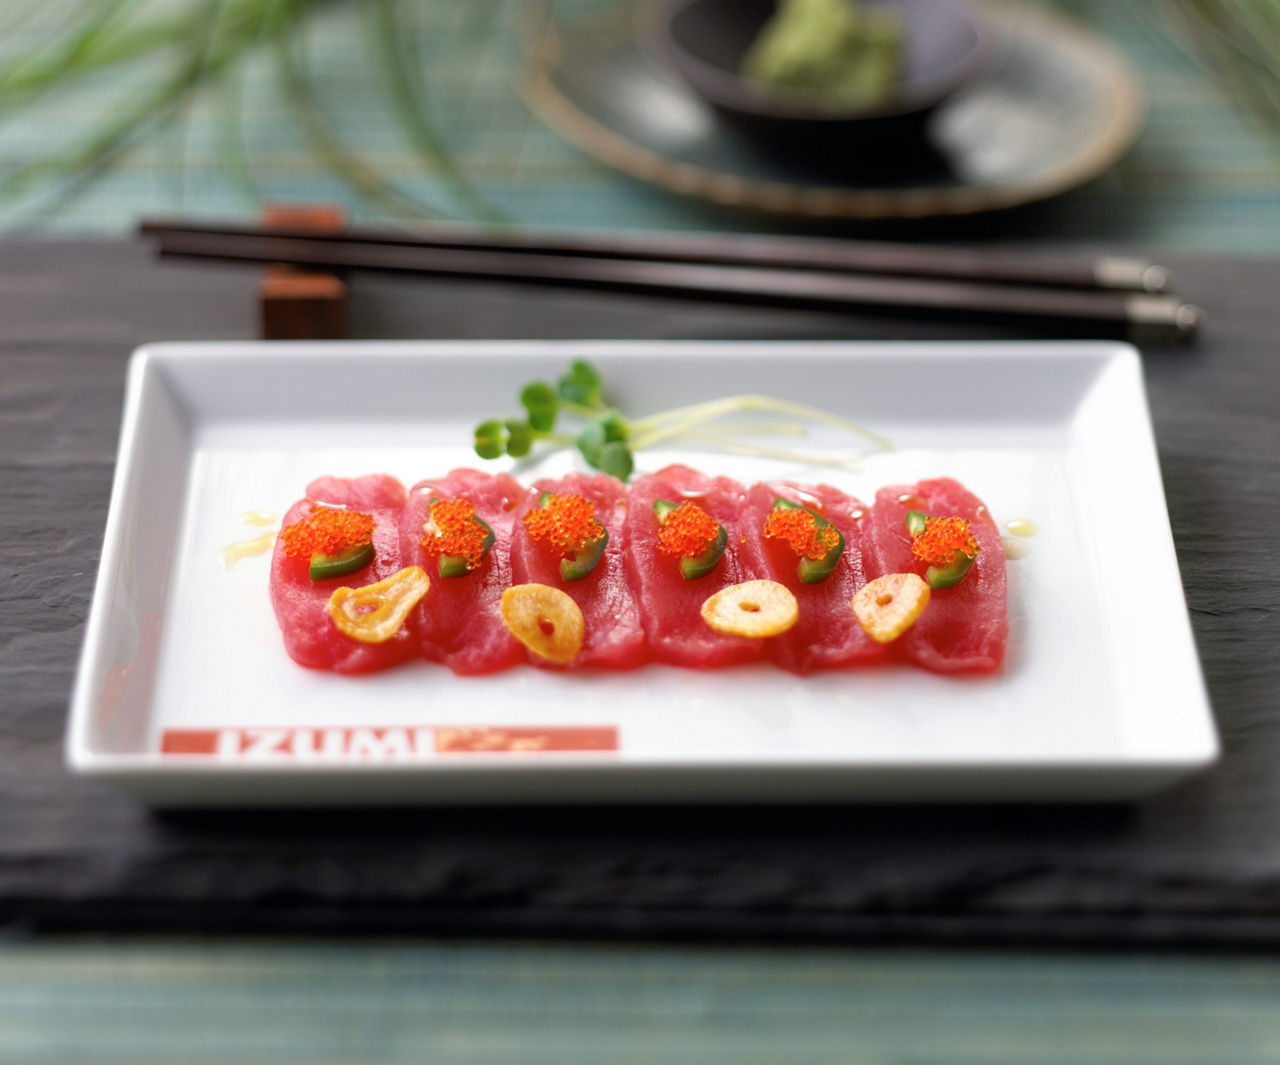 izumi sushi platter food overview tile1